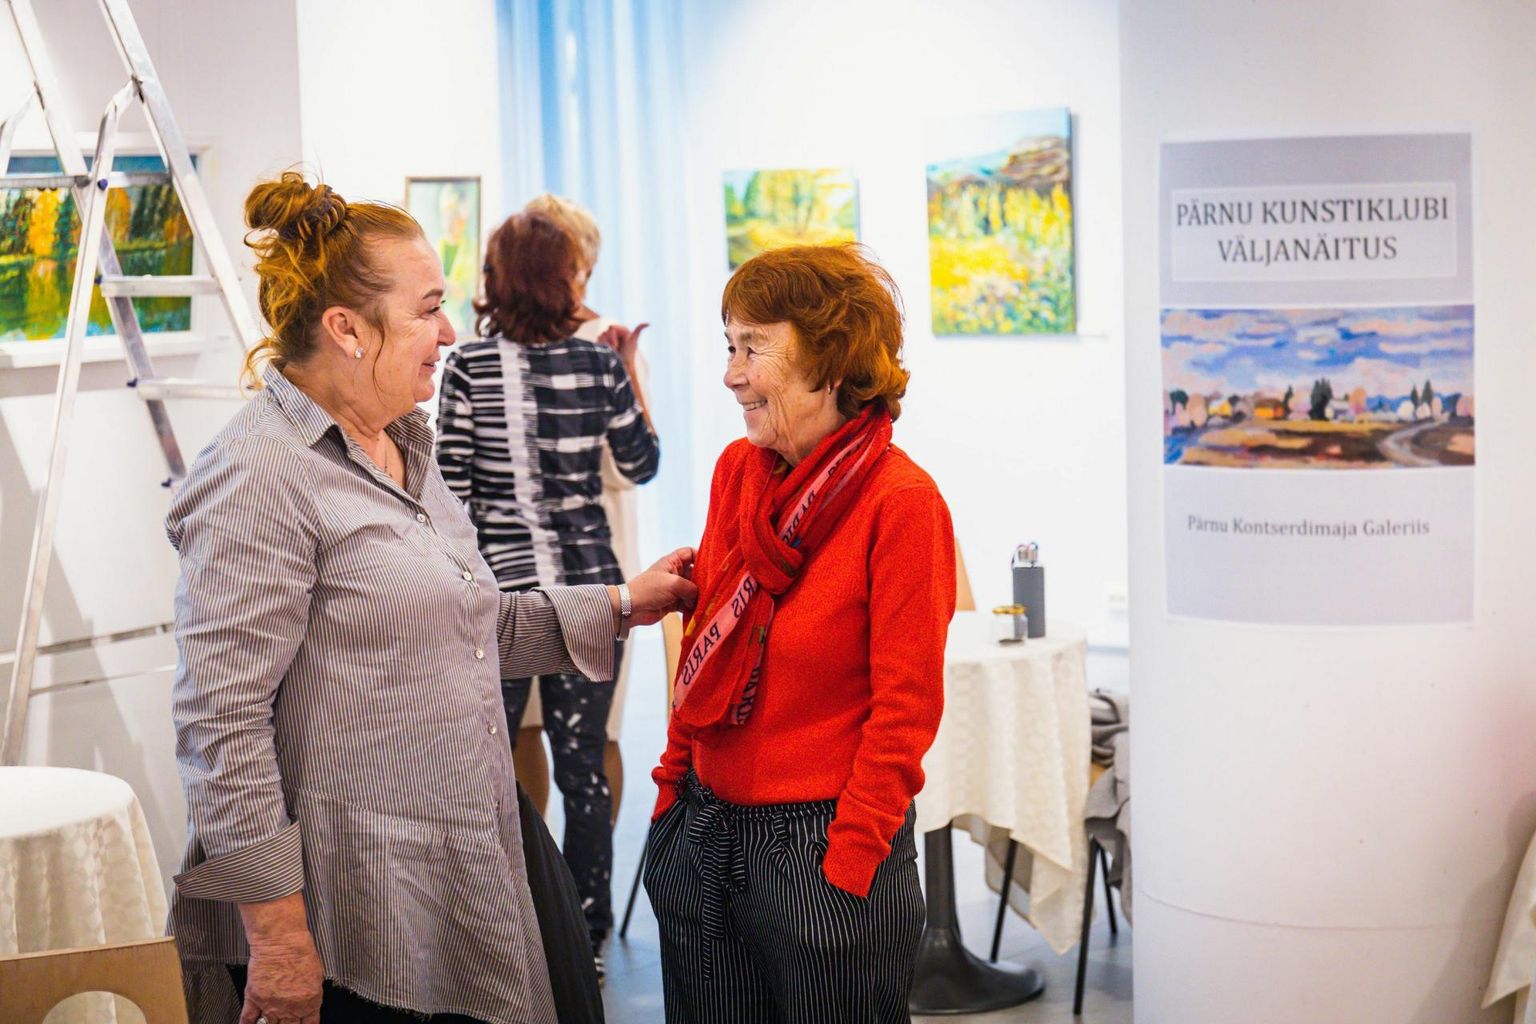 Pärnu kunstiklubi liikmed panid Pärnu kontserdimaja galeriisse üles oma Eesti-teemalise "Väljanäituse".